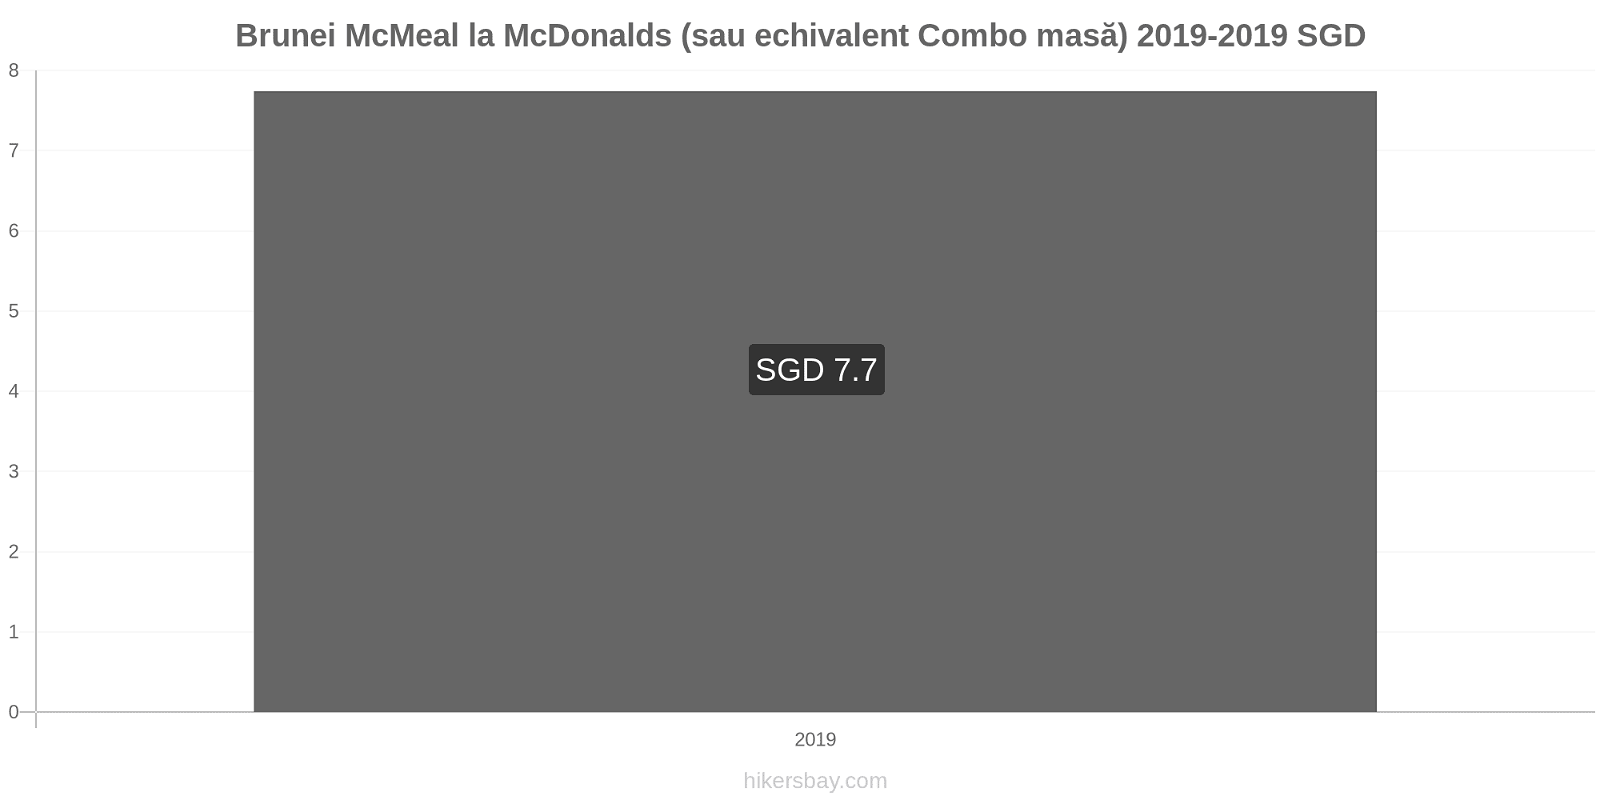 Brunei modificări de preț McMeal la McDonalds (sau echivalent Combo masă) hikersbay.com